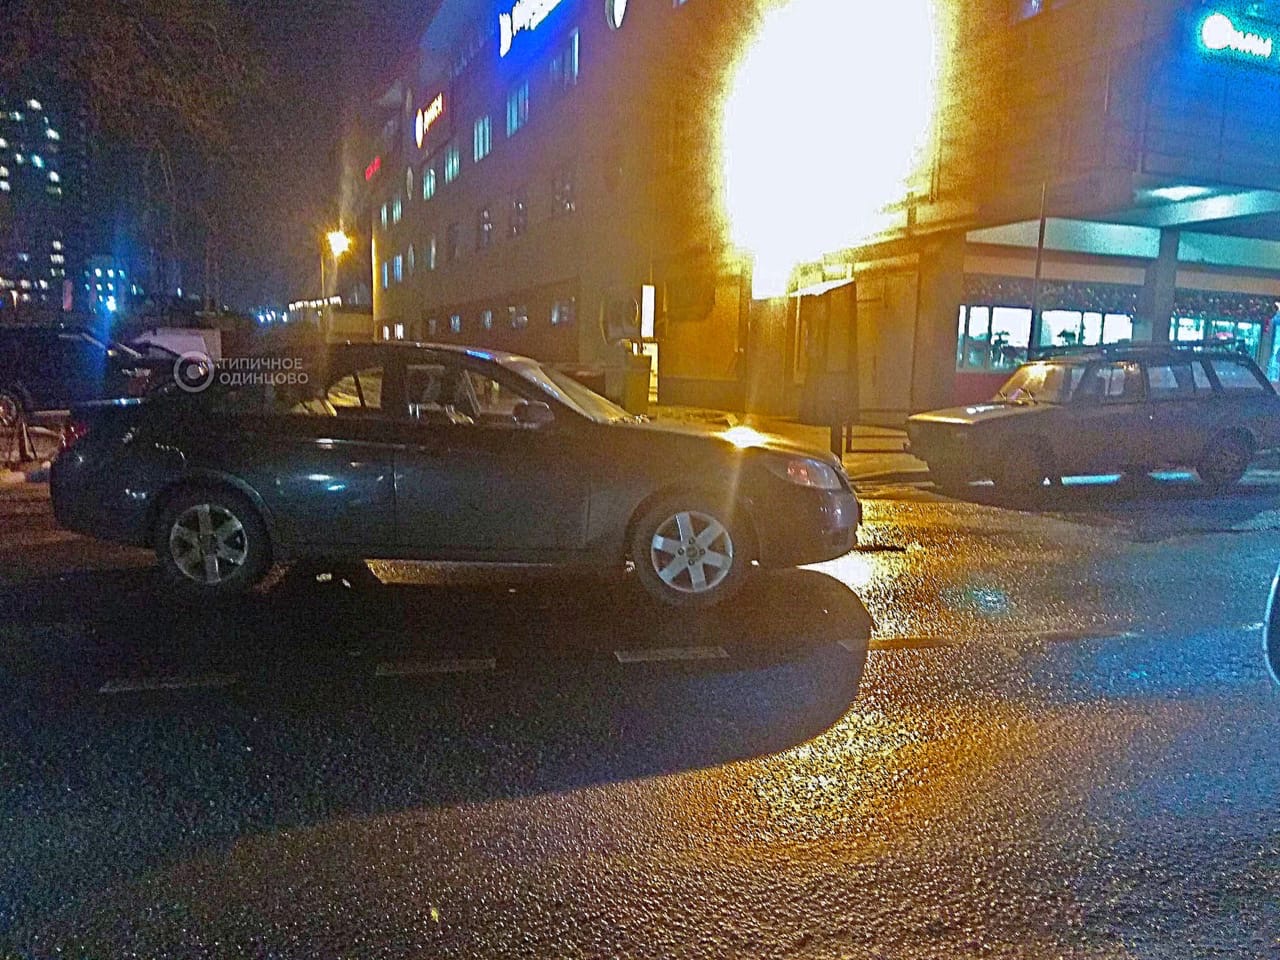 Около ТЦ "Союзный" в Одинцово, женщина припарковала автомобиль прямо посреди проезжей...